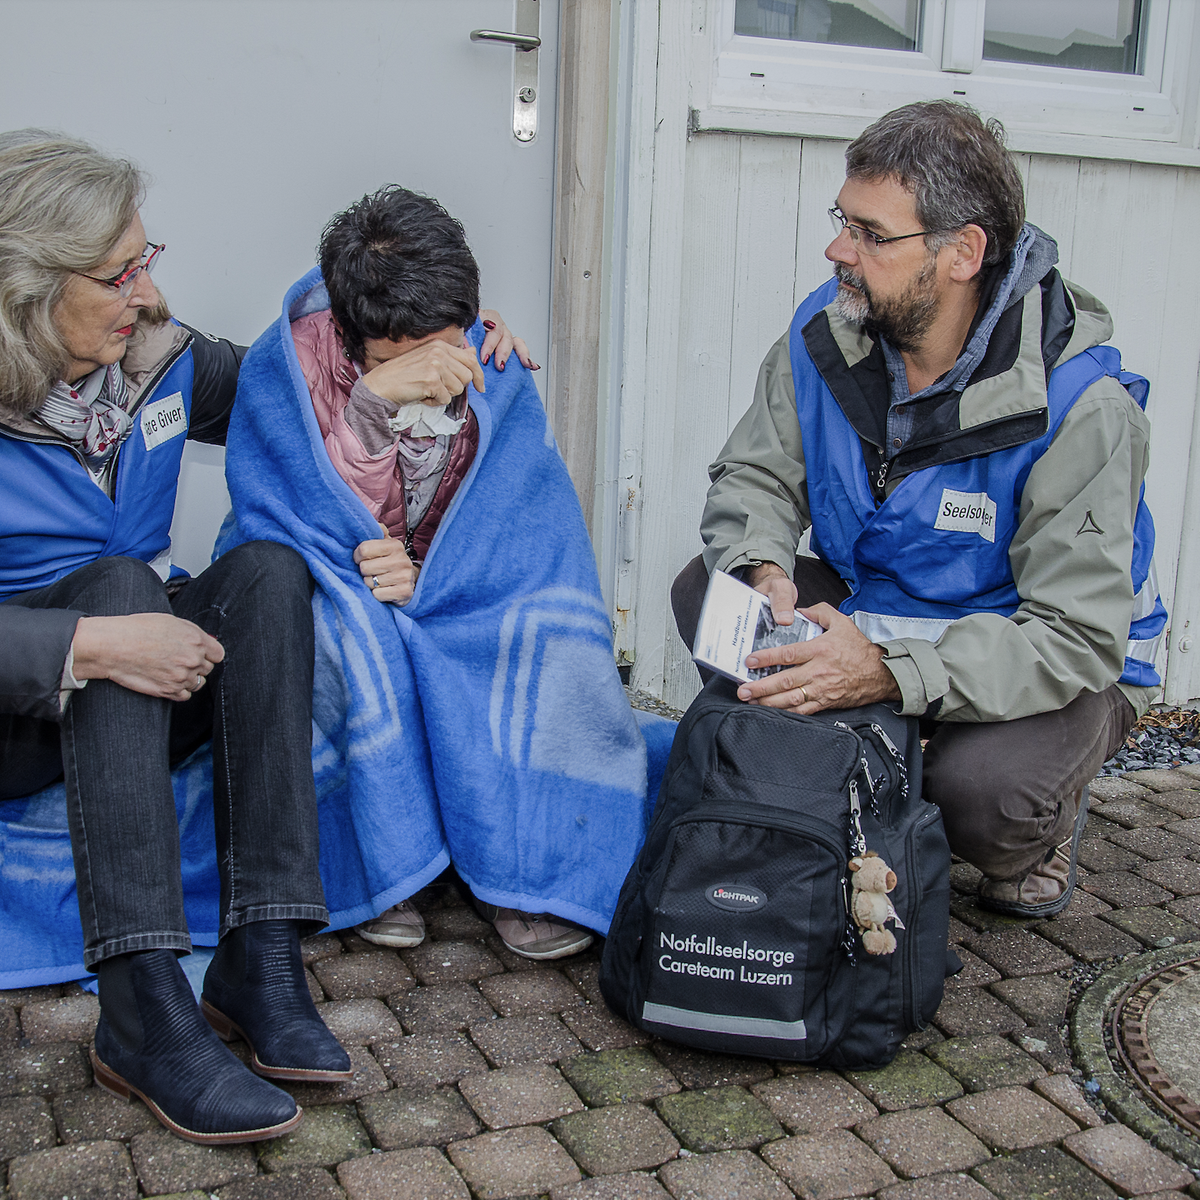 900 Stunden Arbeit: Luzerner Care Givers ziehen Bilanz